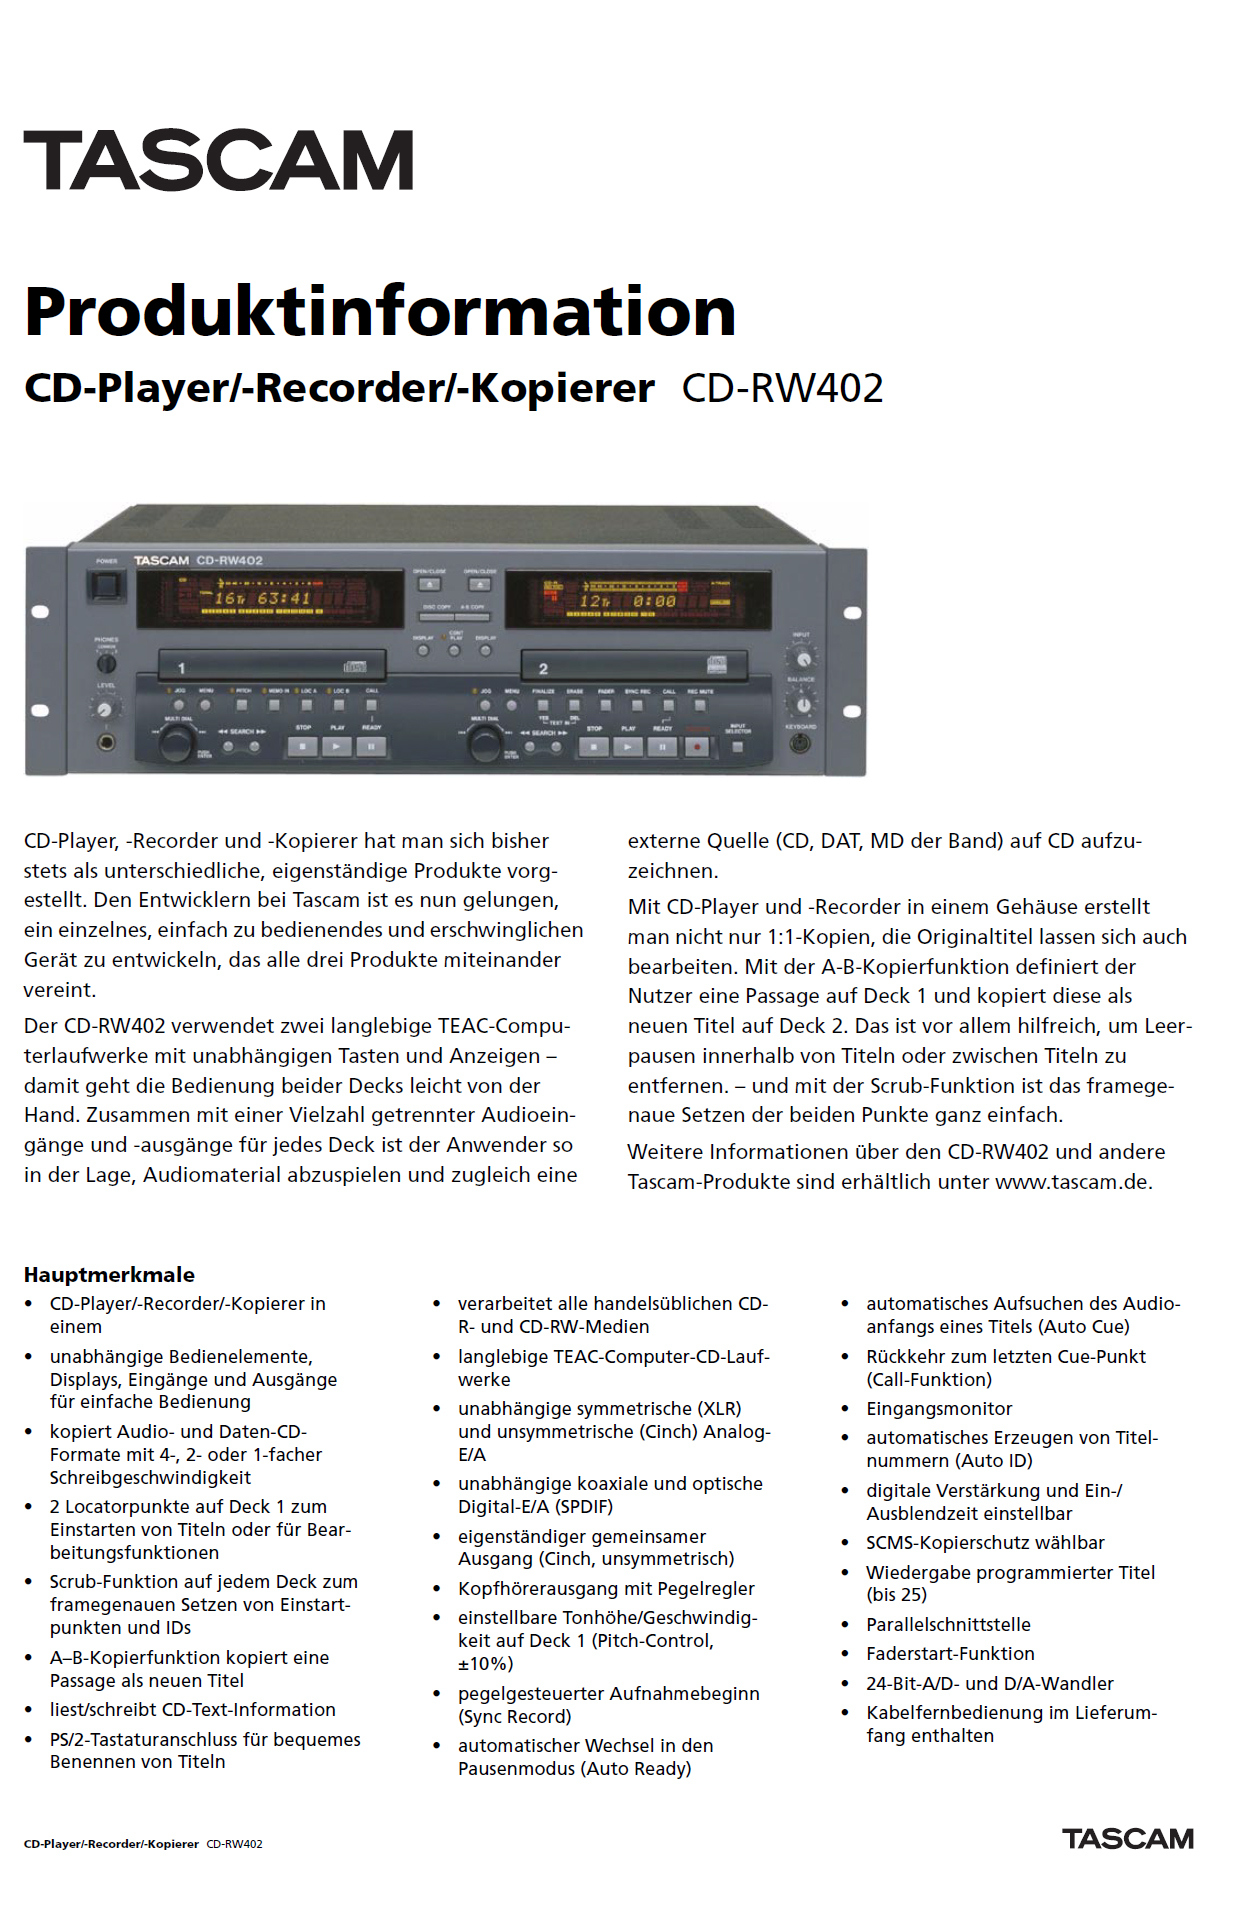 Tascam CD-RW 402-Prospekt-2002.jpg